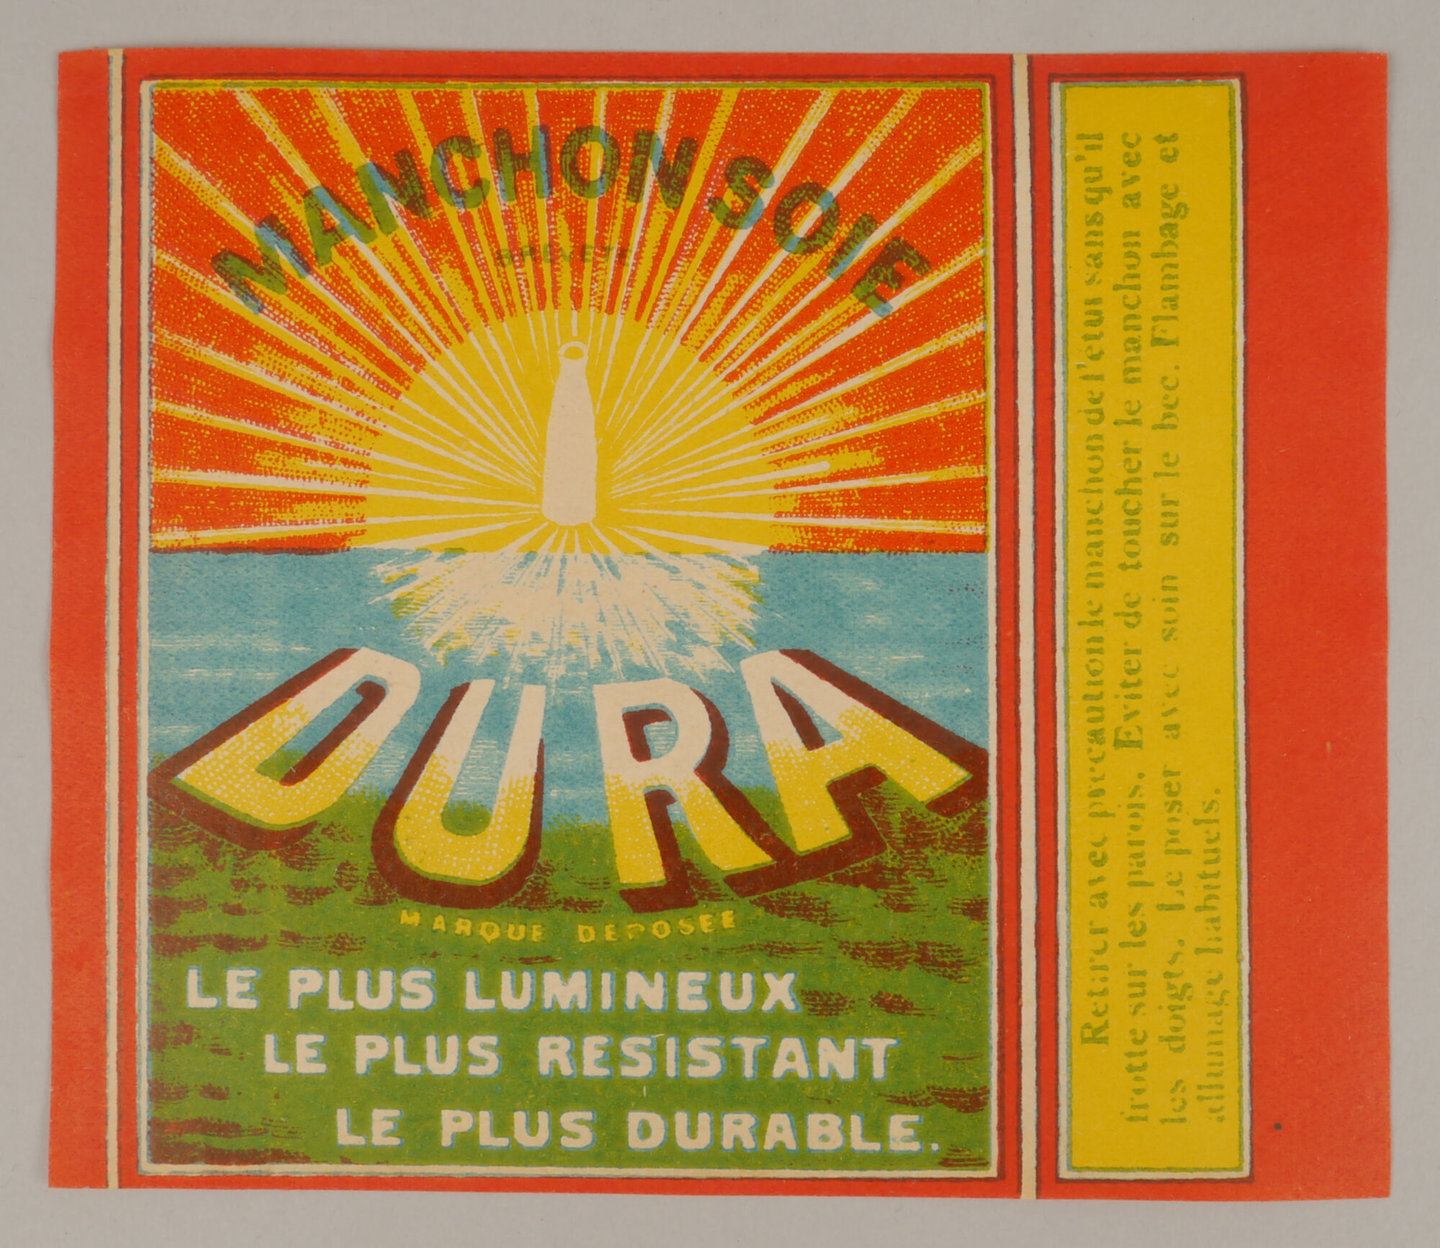 Verpakkingsetiket voor gloeikousje van het merk Dura